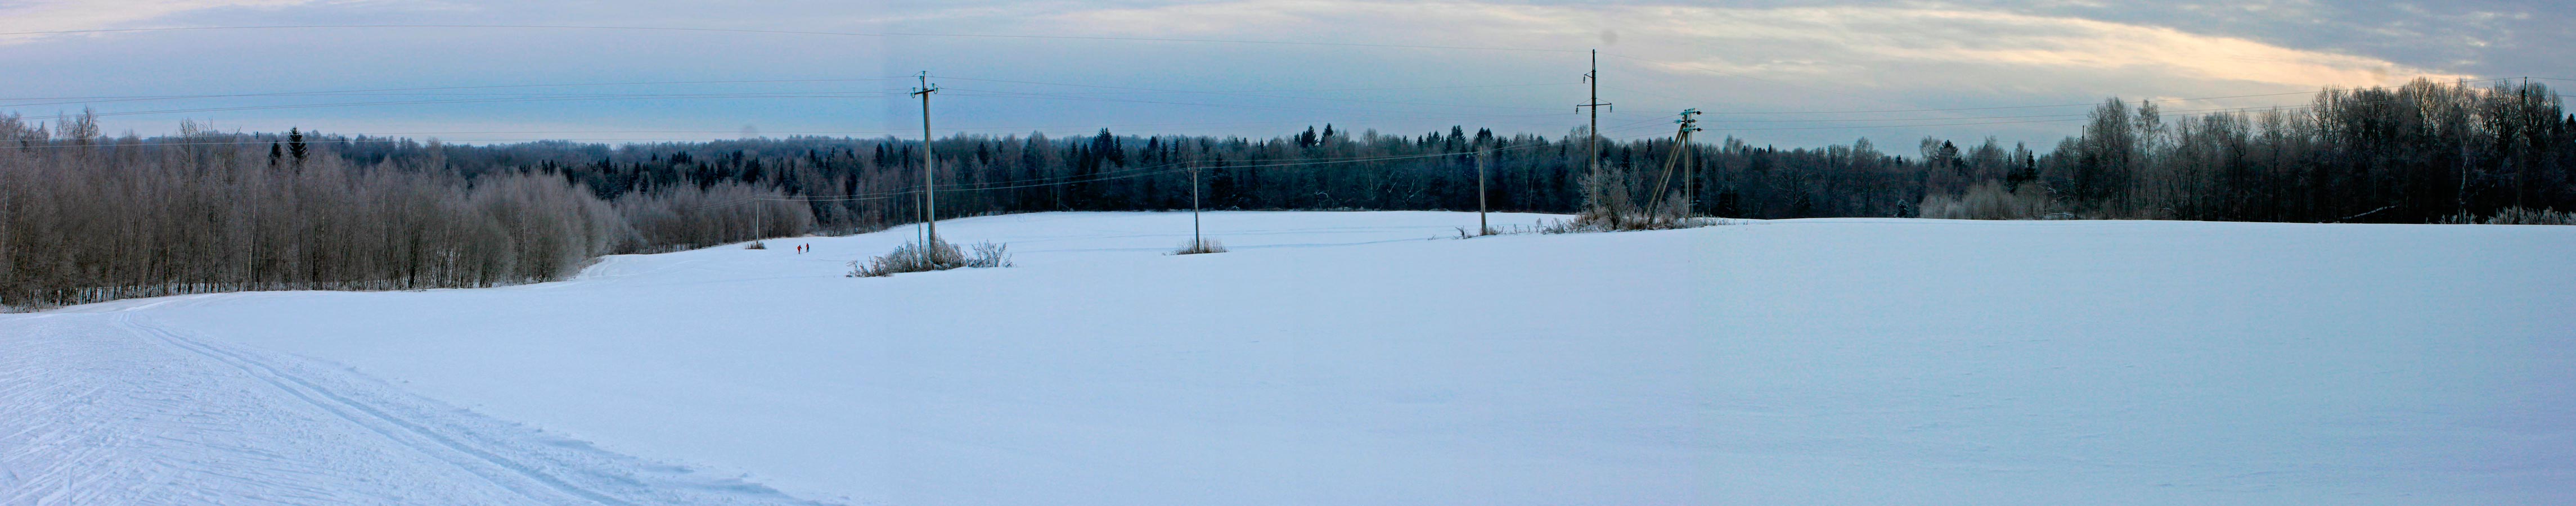 Дмитриановские холмы. Фото лыжной трассы в с. Дмитриановское, Ростовского района